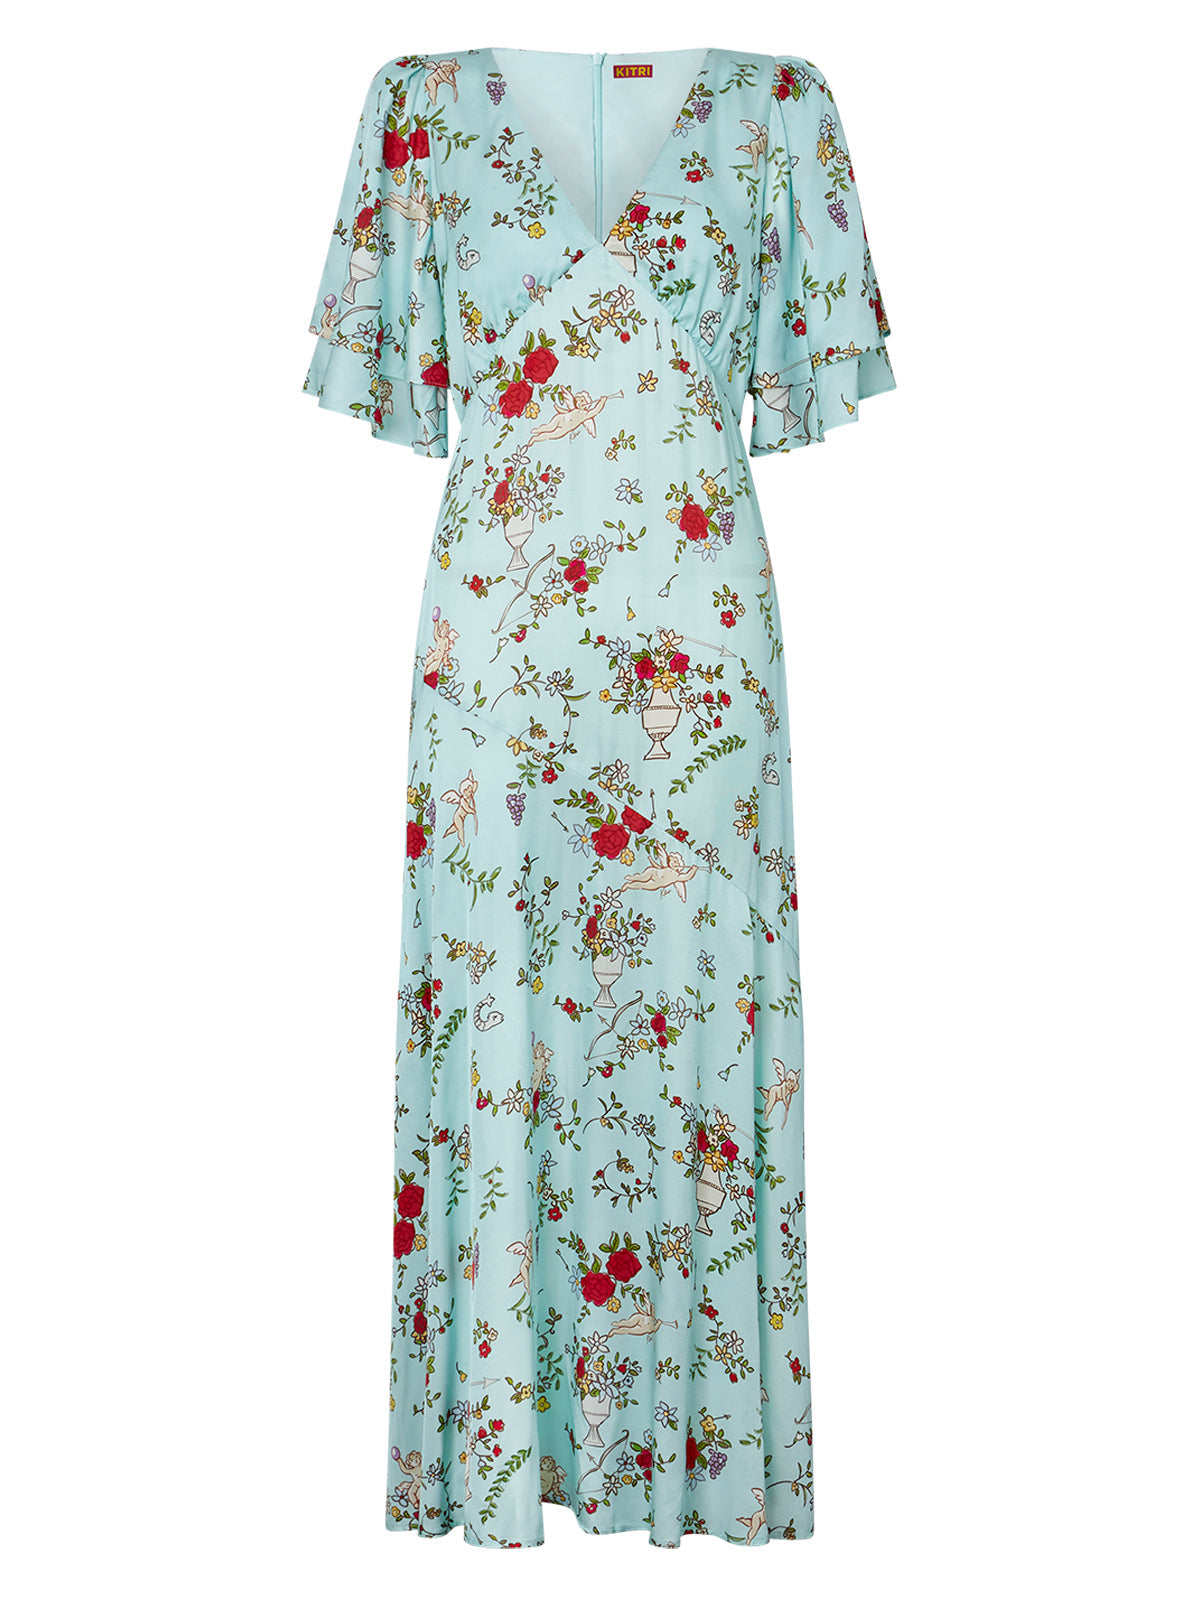 Tallulah Mint Cherub Print Maxi Dress | KITRI Studio